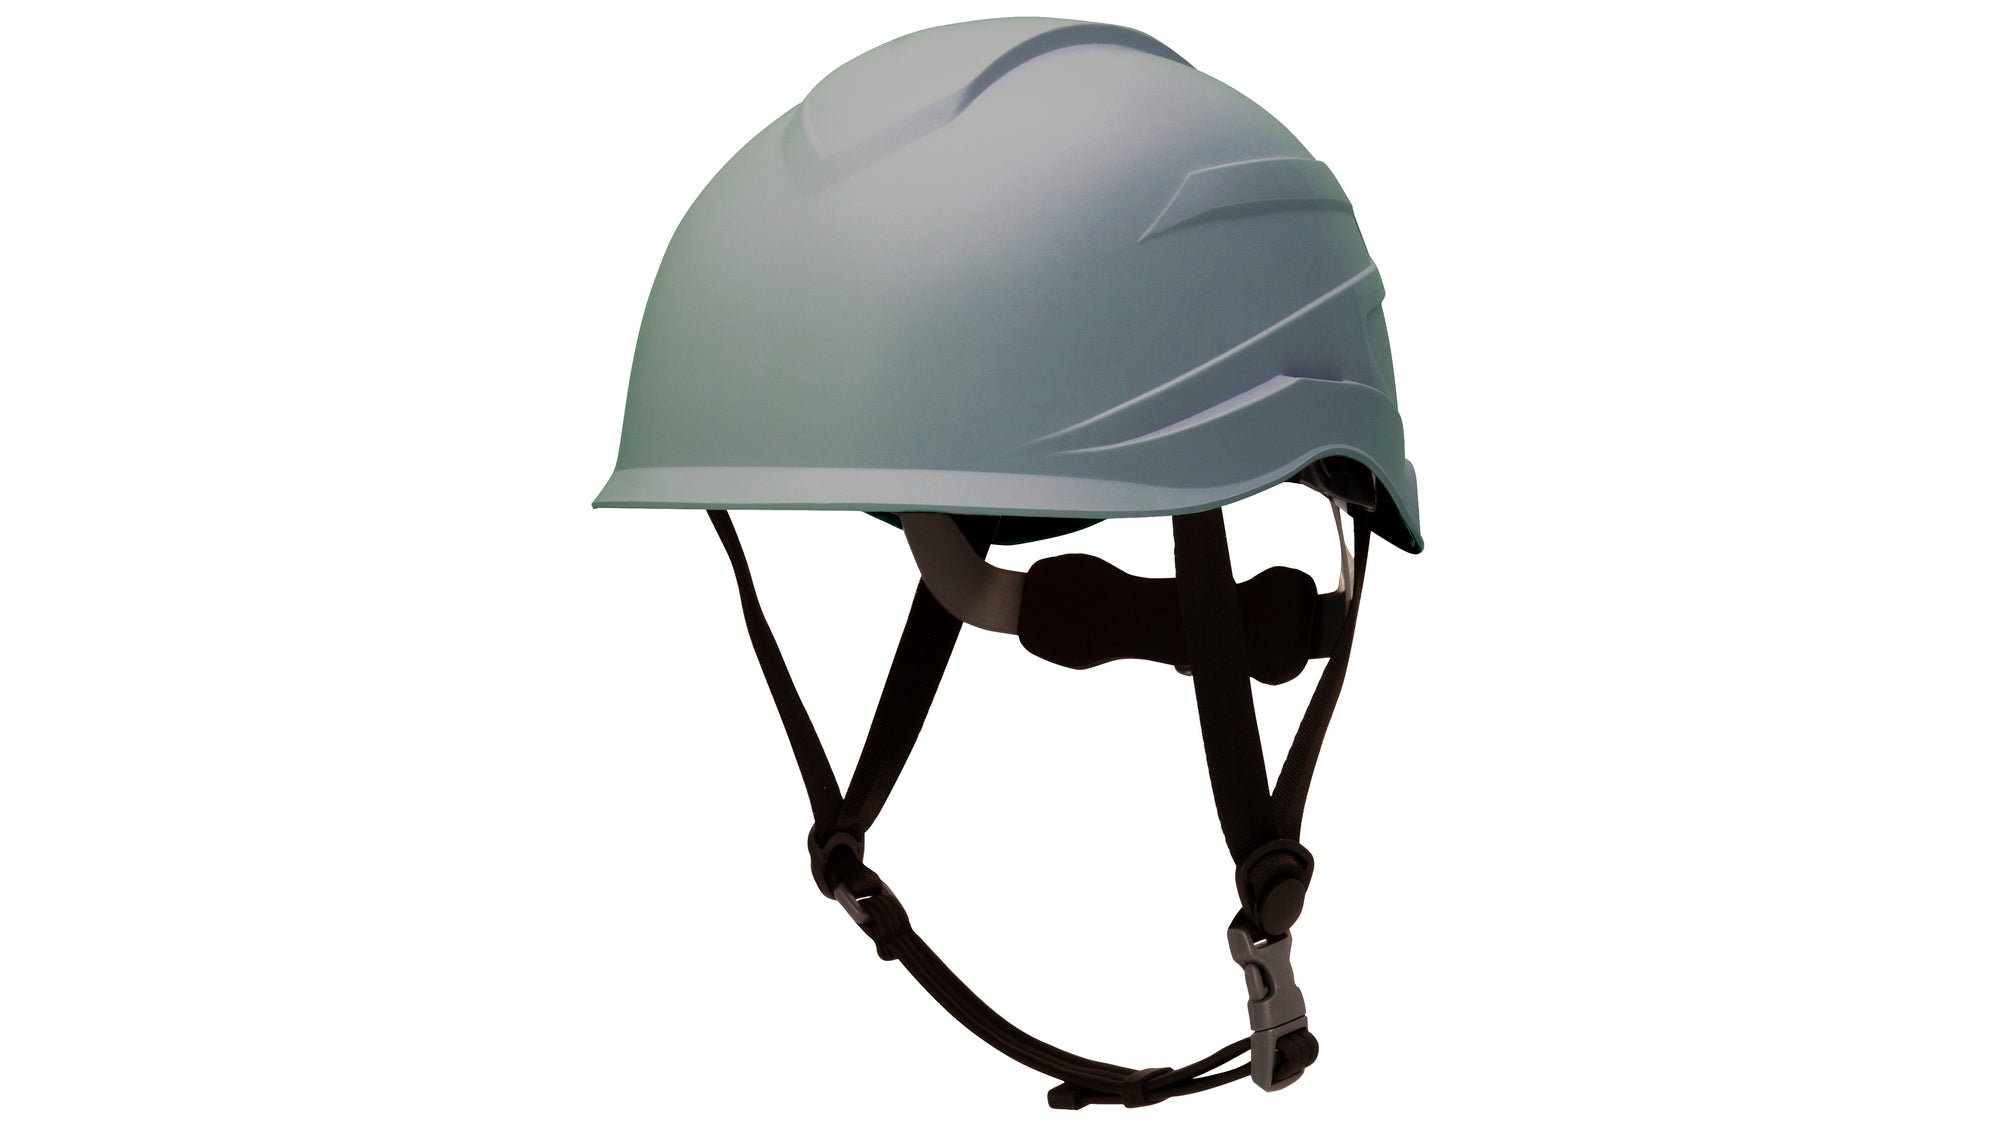 Pyramex Ridgeline Xr7 Safety Helmet_Slate Grey - Work World - Workwear, Work Boots, Safety Gear